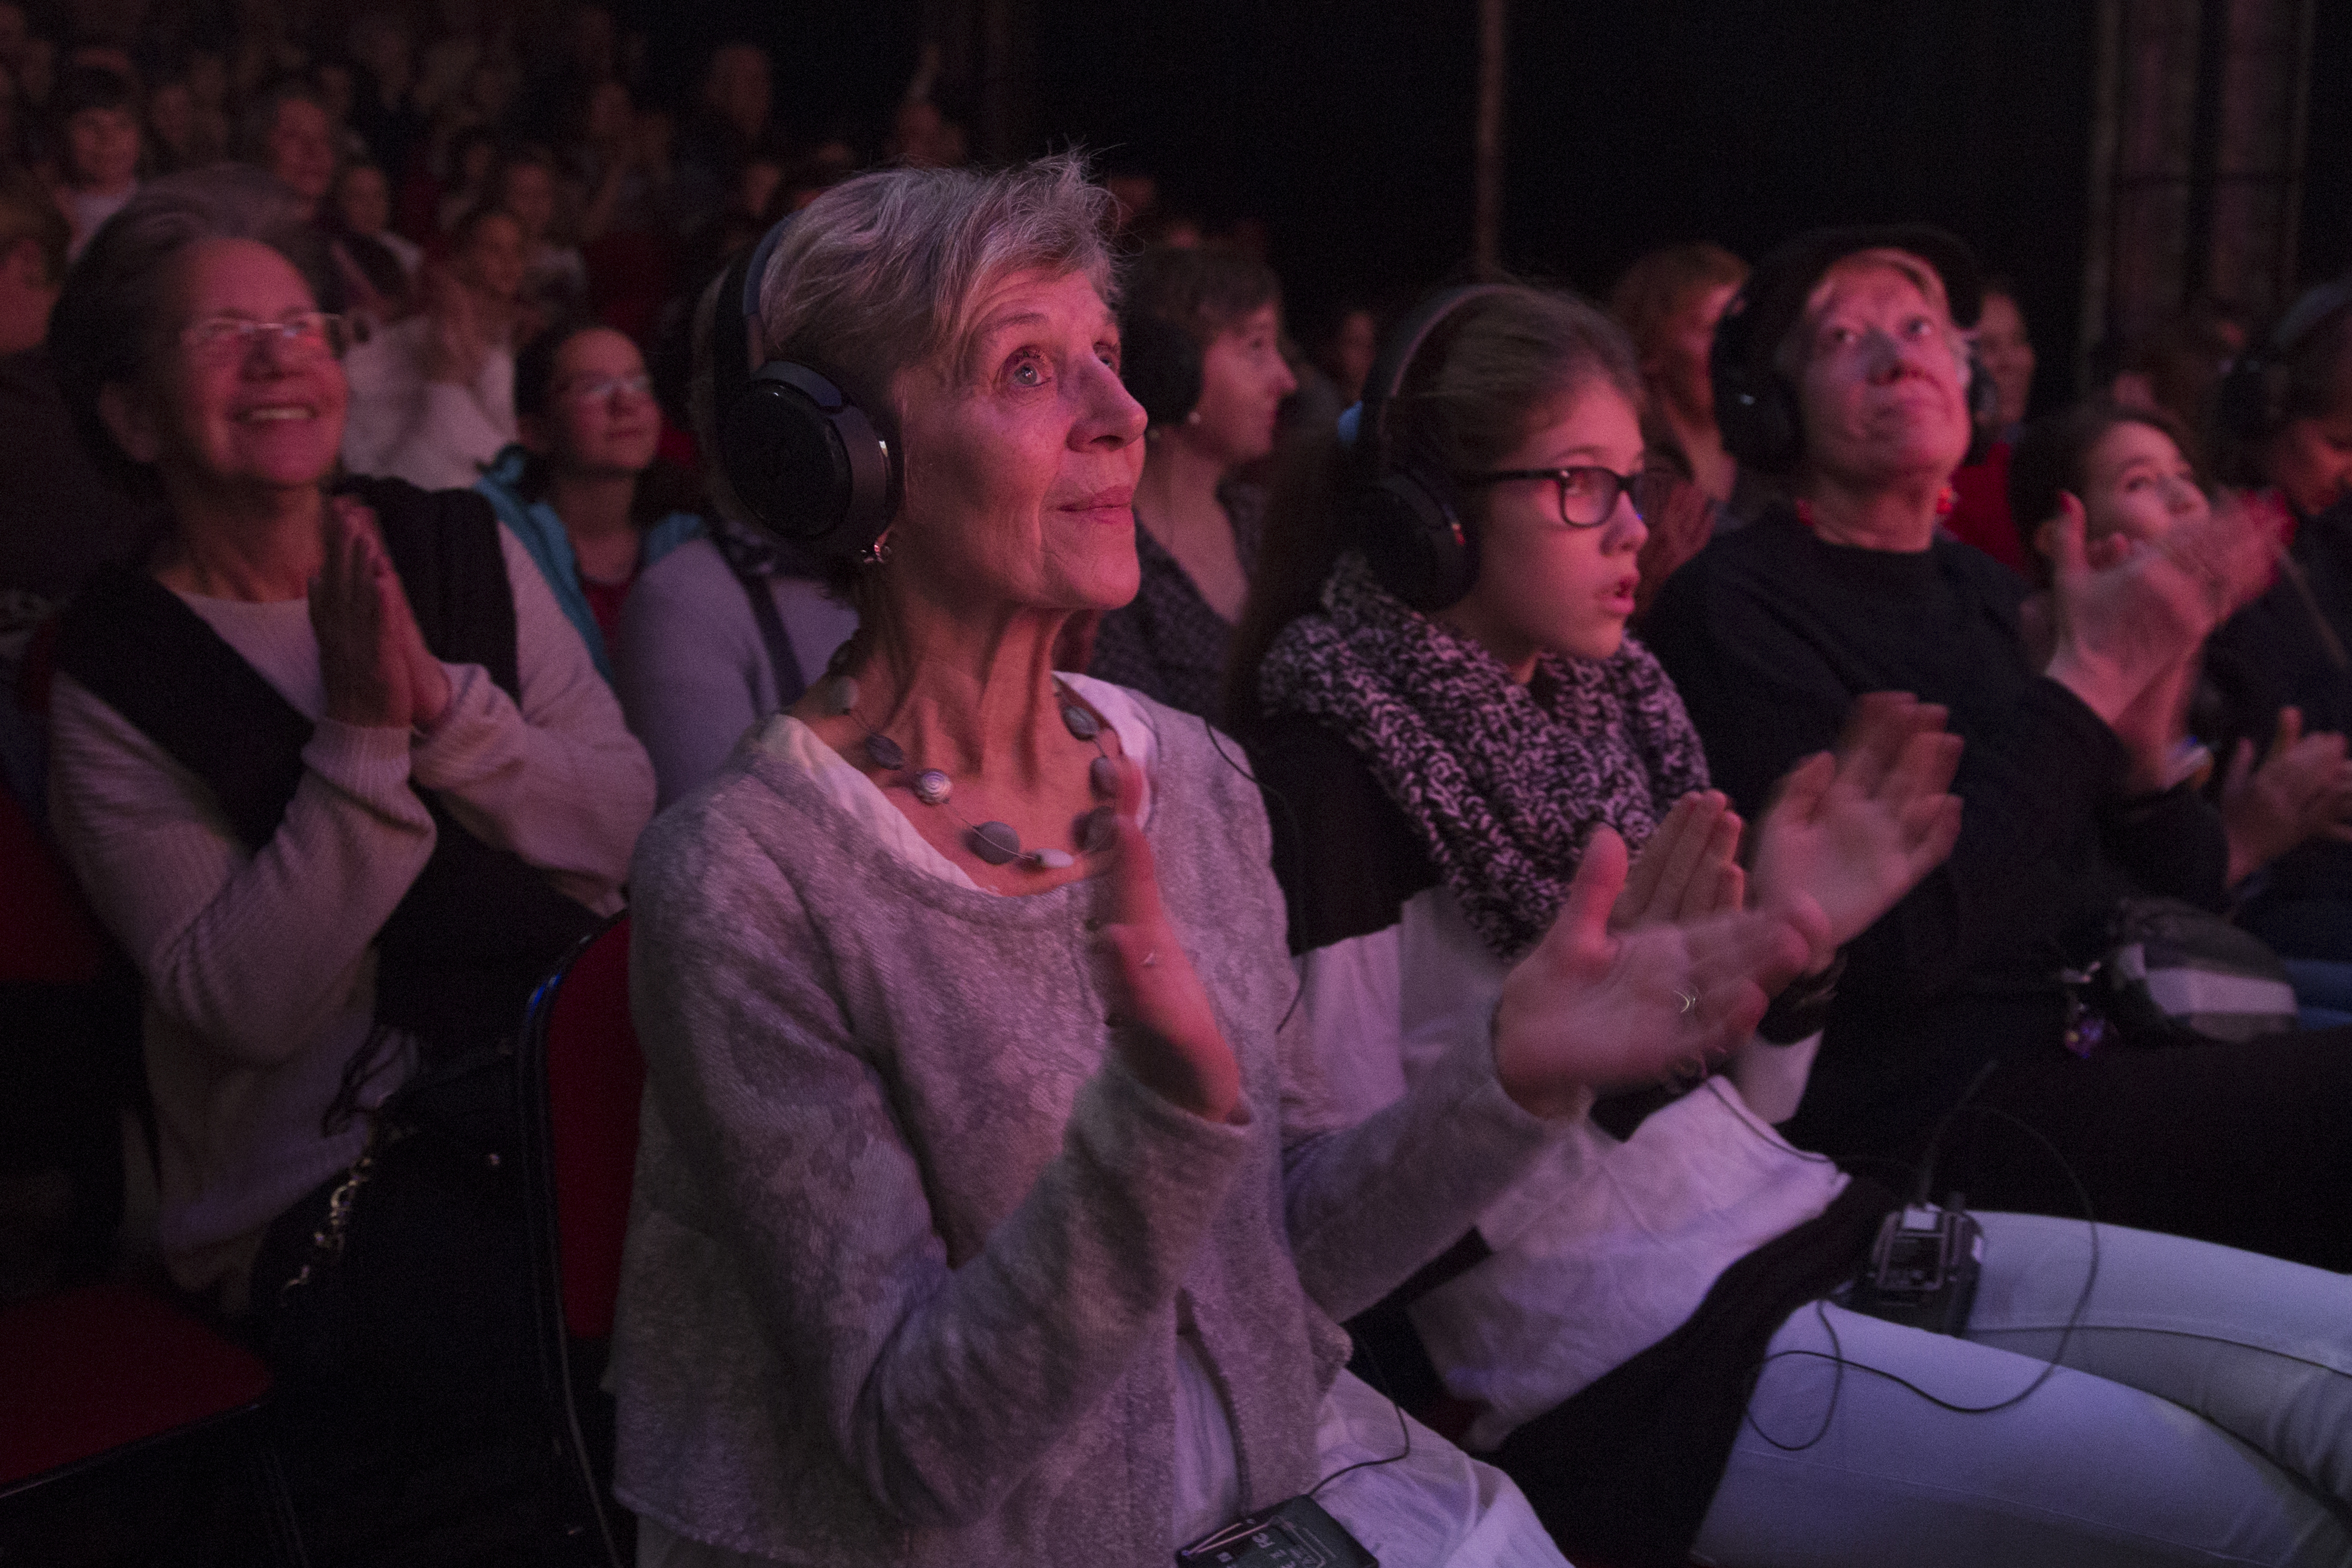 Descriptif de l'image: Une salle de théâtre bondée dans laquelle on voit une femme au premier rang qui applaudit. Elle porte un casque sur les oreilles. A ses côtés et derrière elles plusieurs personnes portent aussi des casques.